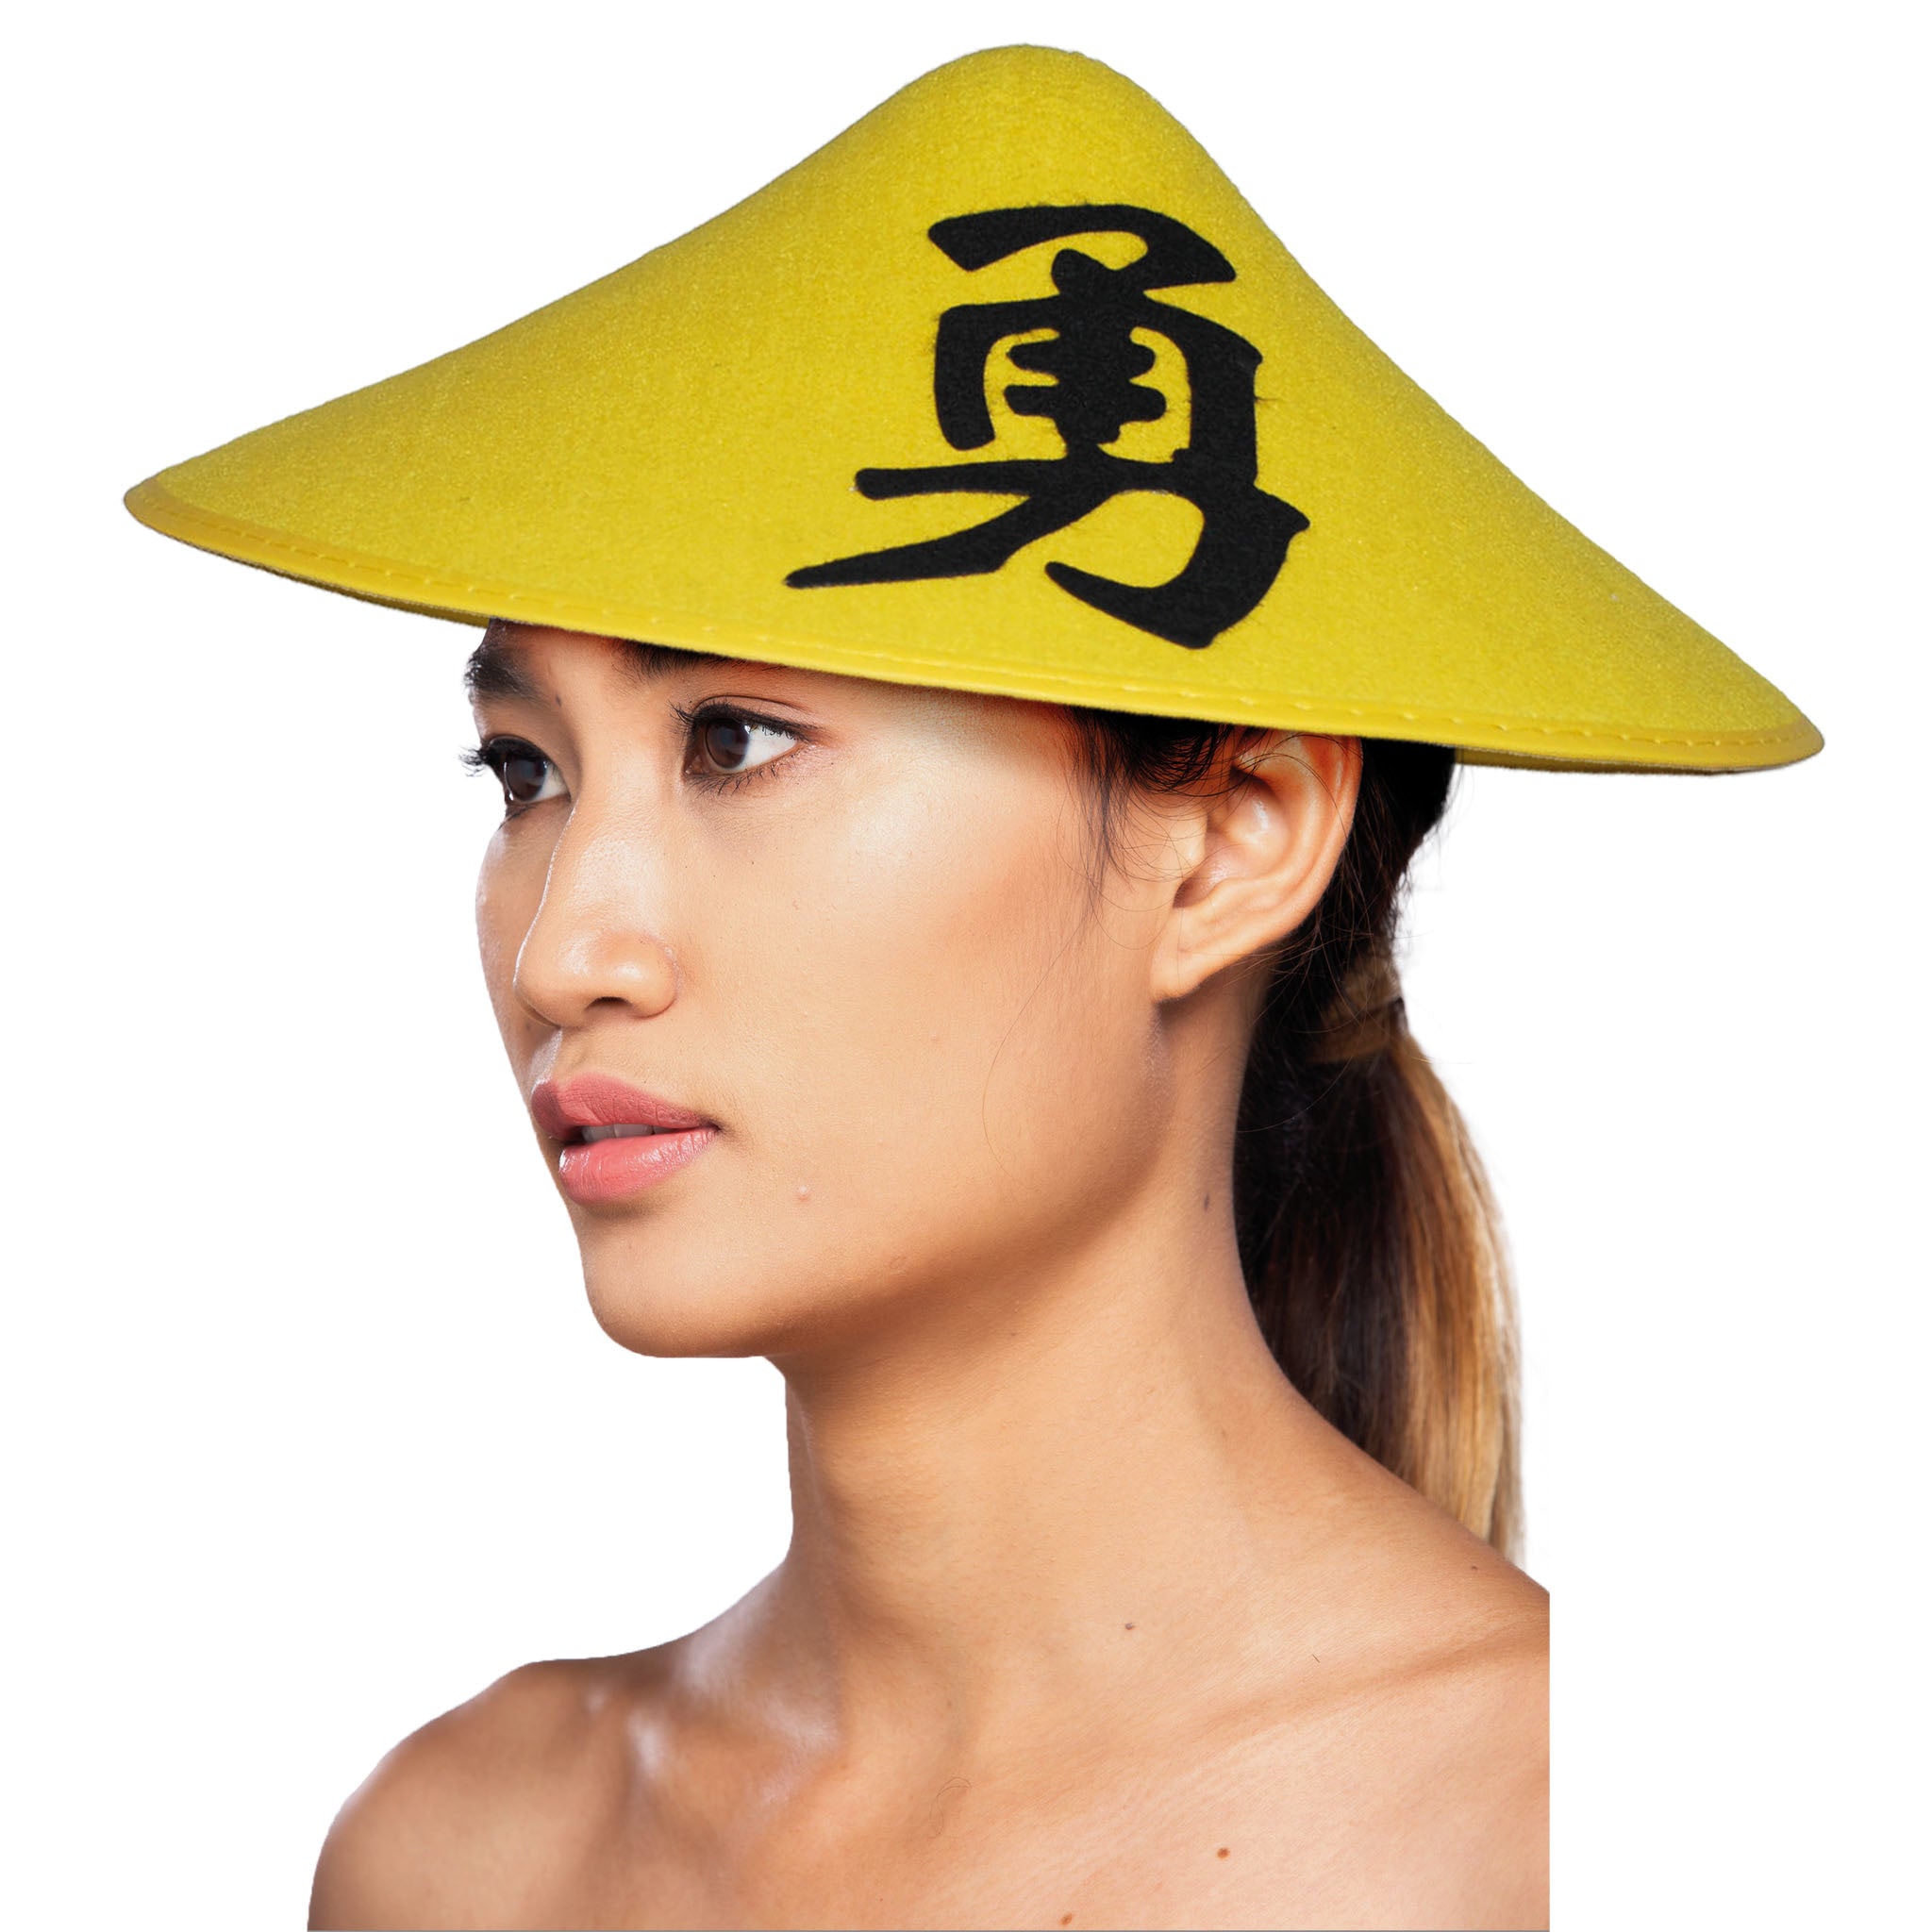 Chinese Aziatiesche hoed geel met teken - Verkleed carnaval hoeden/hoedjes voor volwassenen